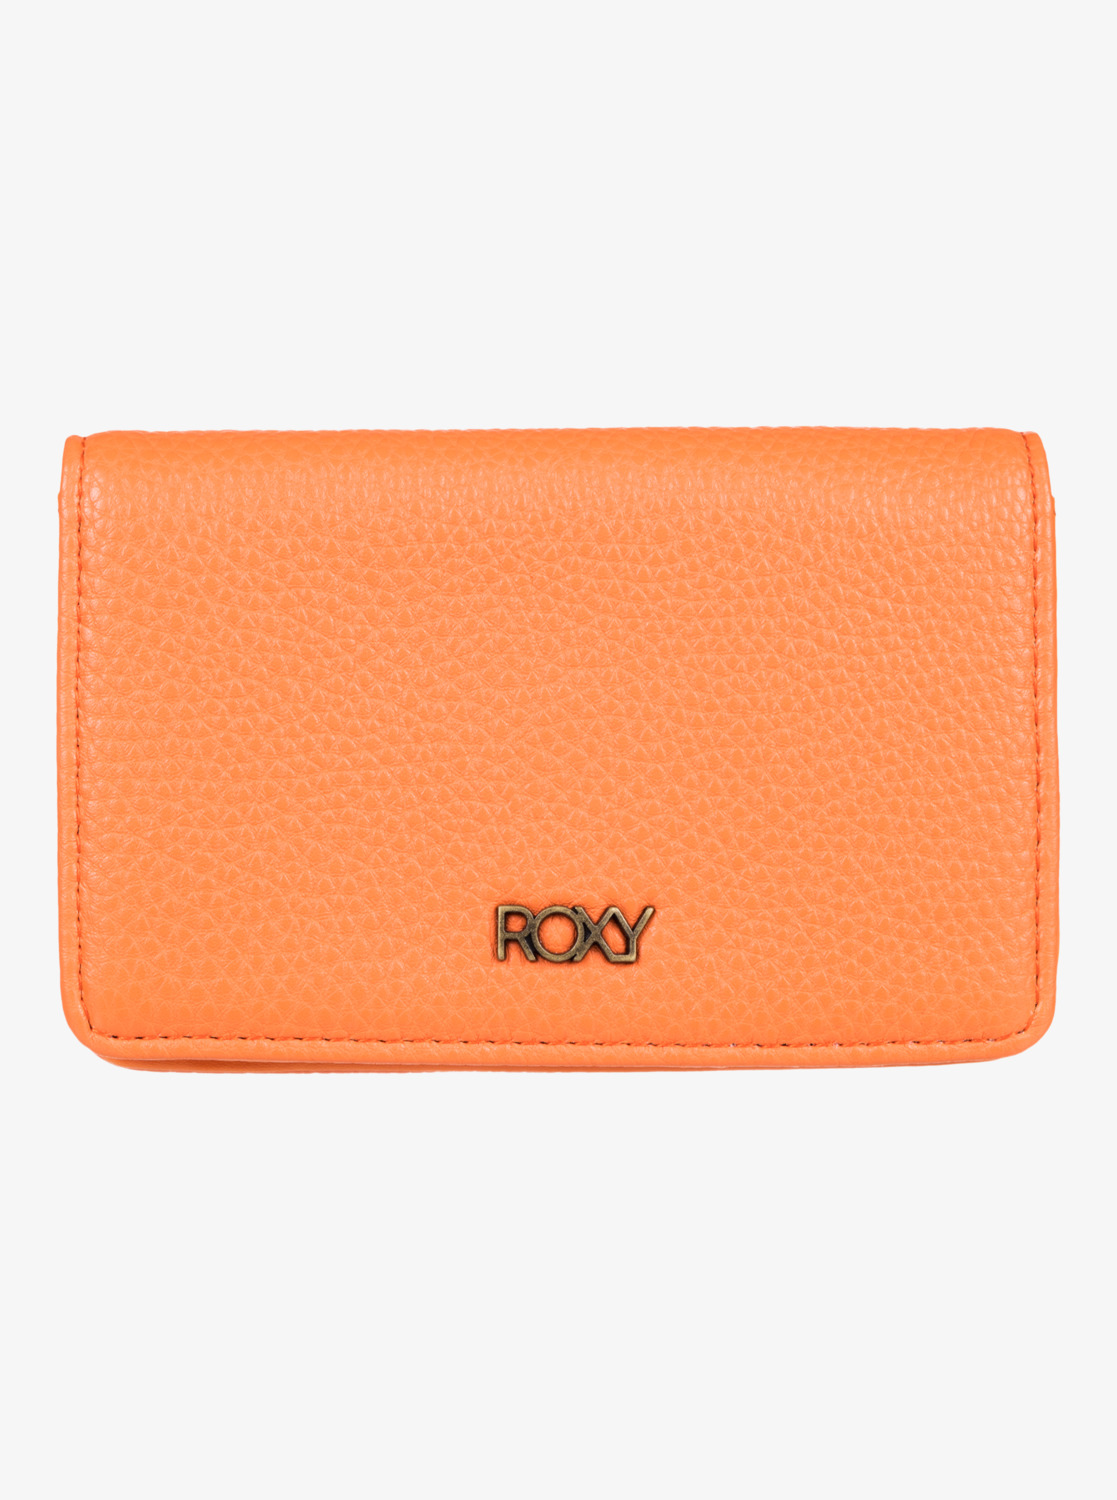 Women's Wallet Roxy SHADOW LIME